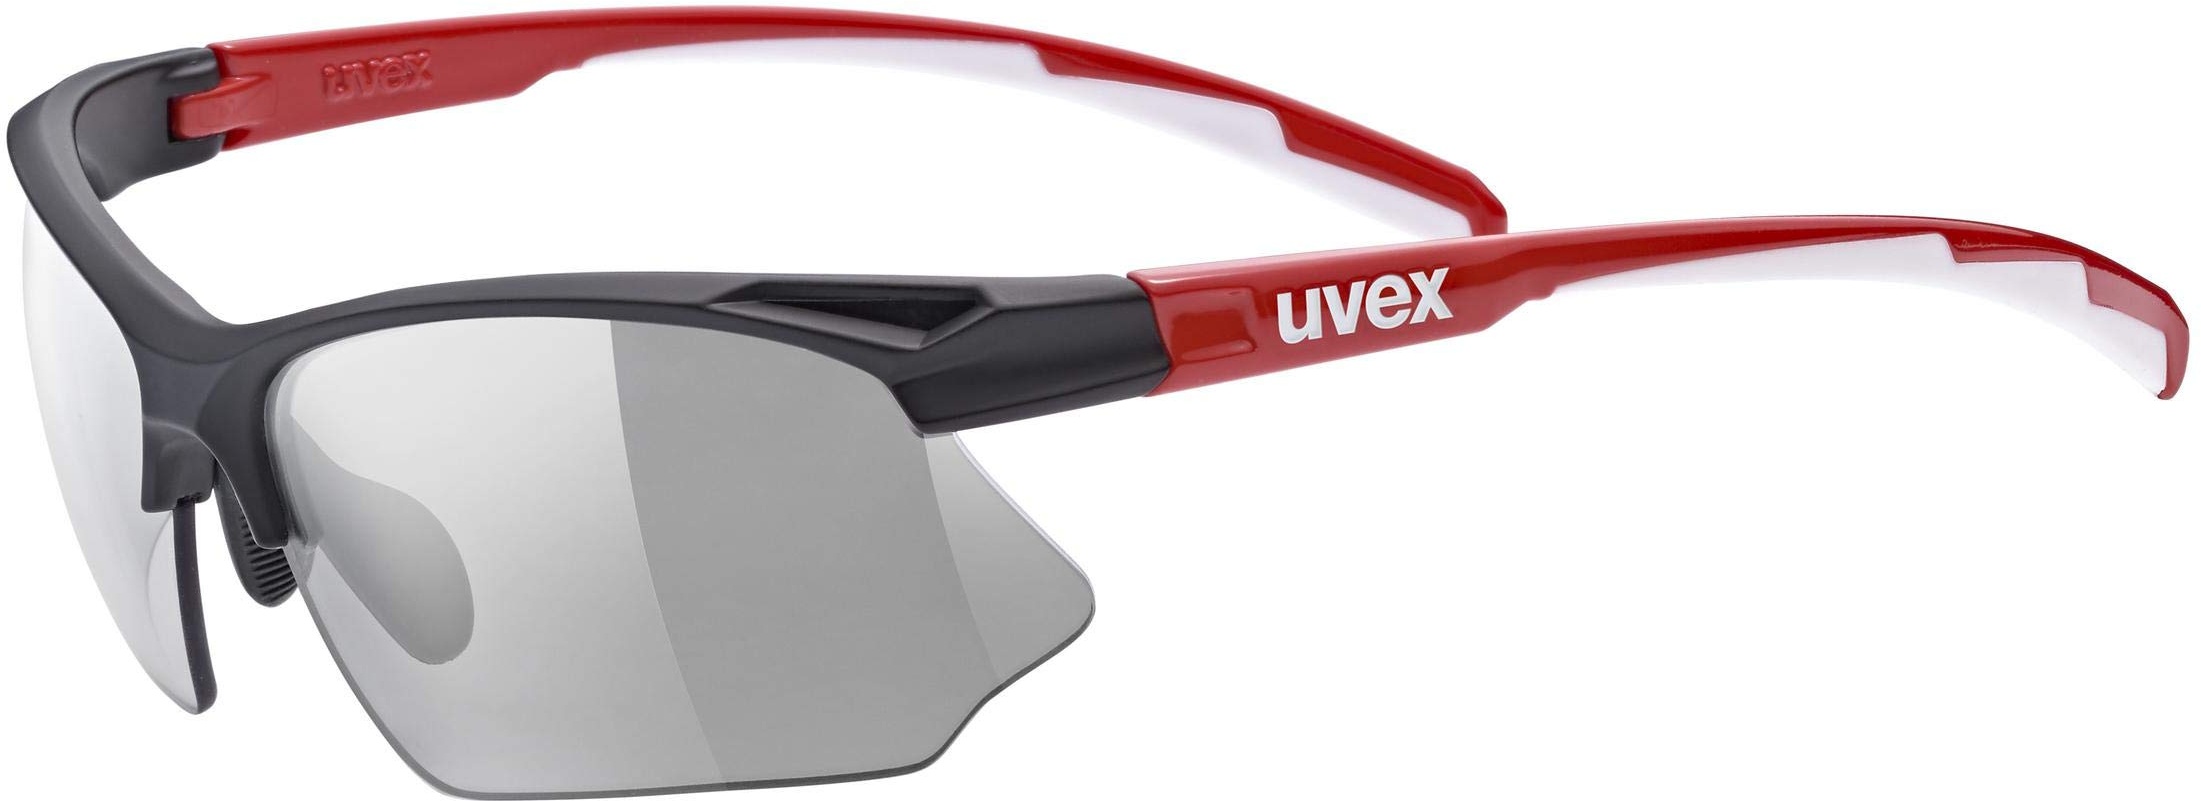 uvex Unisex – Erwachsene, sportstyle 802 V Sportbrille, selbsttönend, black red/smoke, one size